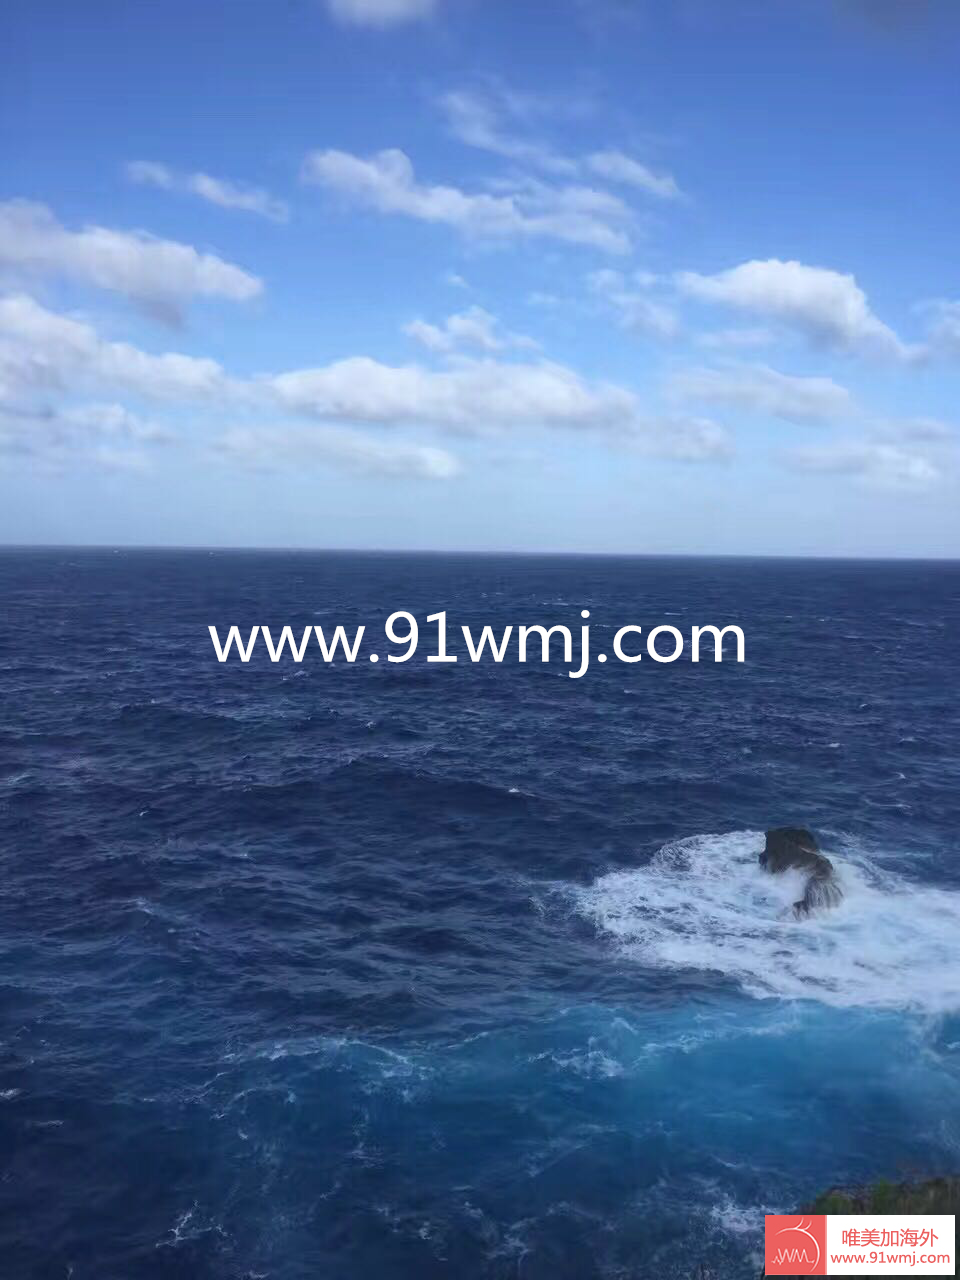 湖南塞班岛产子客户实拍塞班岛海上美景照